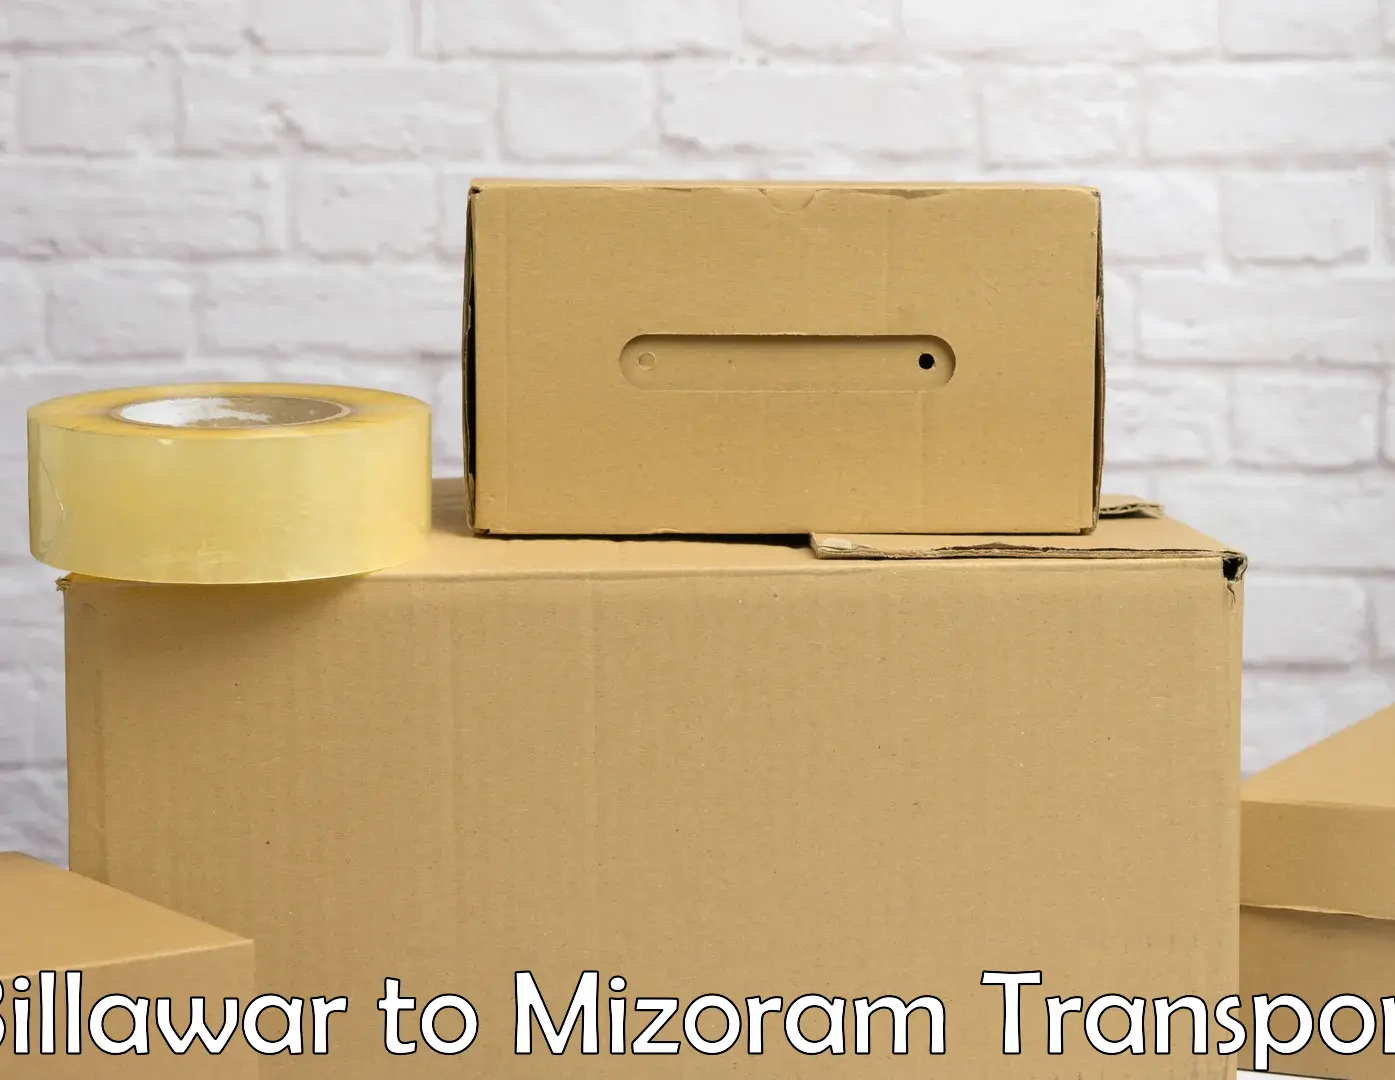 Pick up transport service Billawar to Aizawl